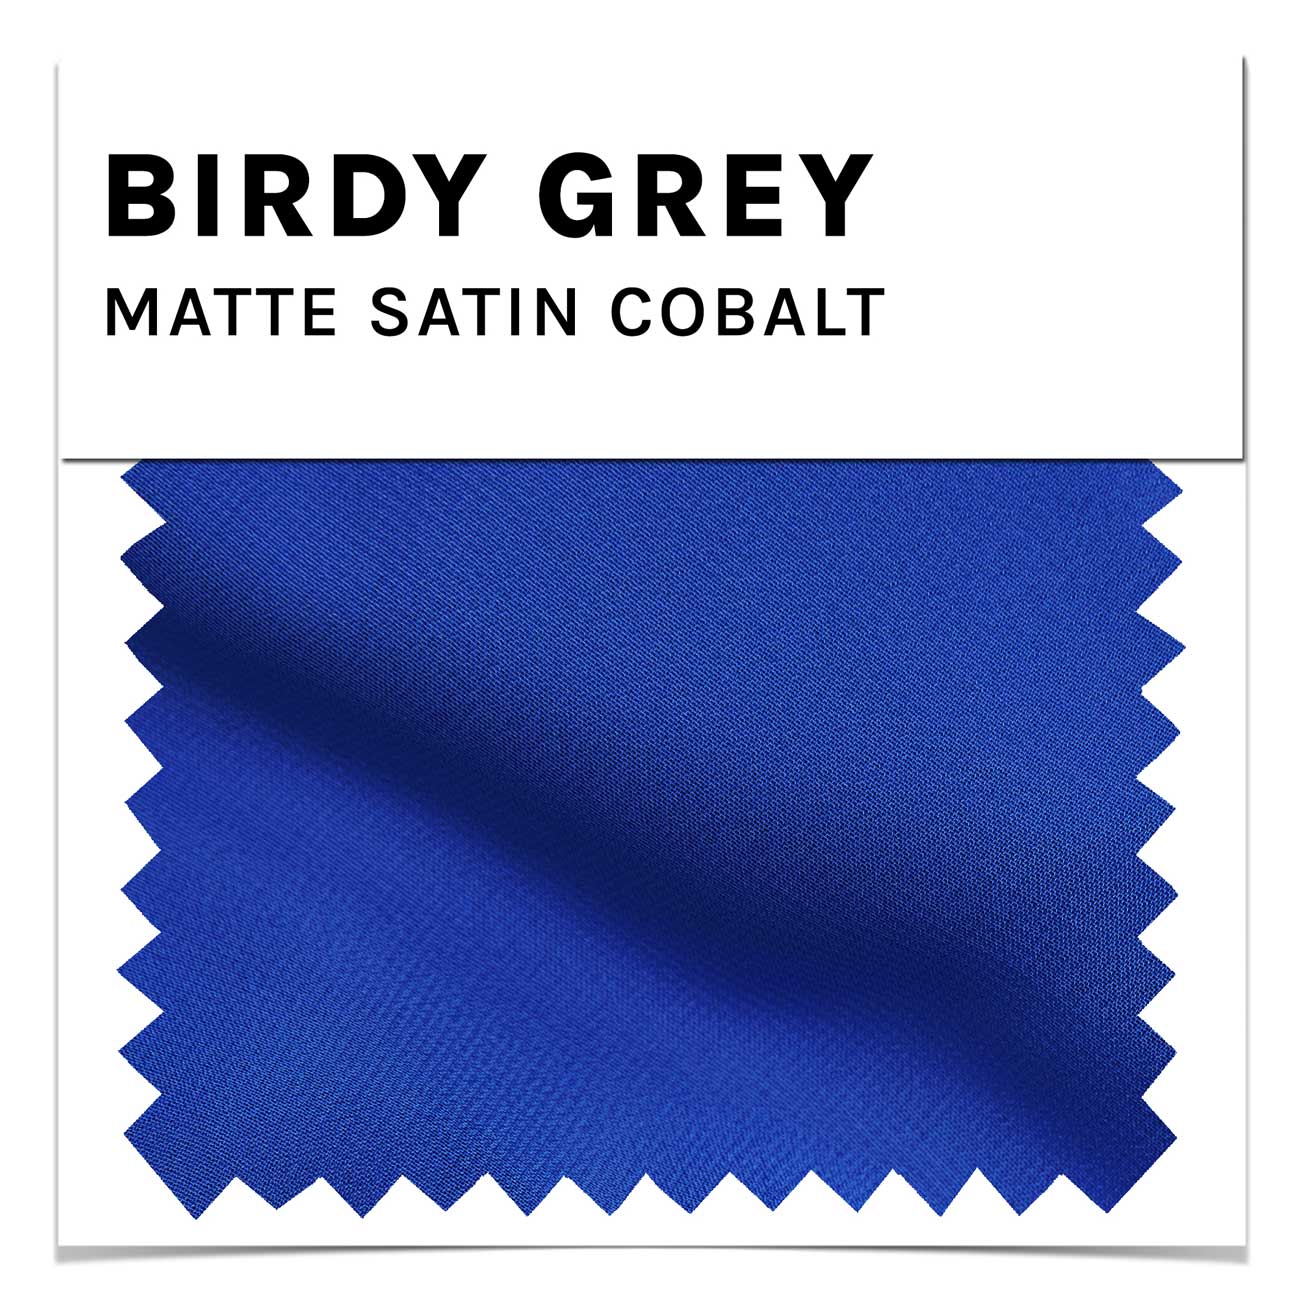 Cobalt Matte Satin Swatch by Birdy Grey